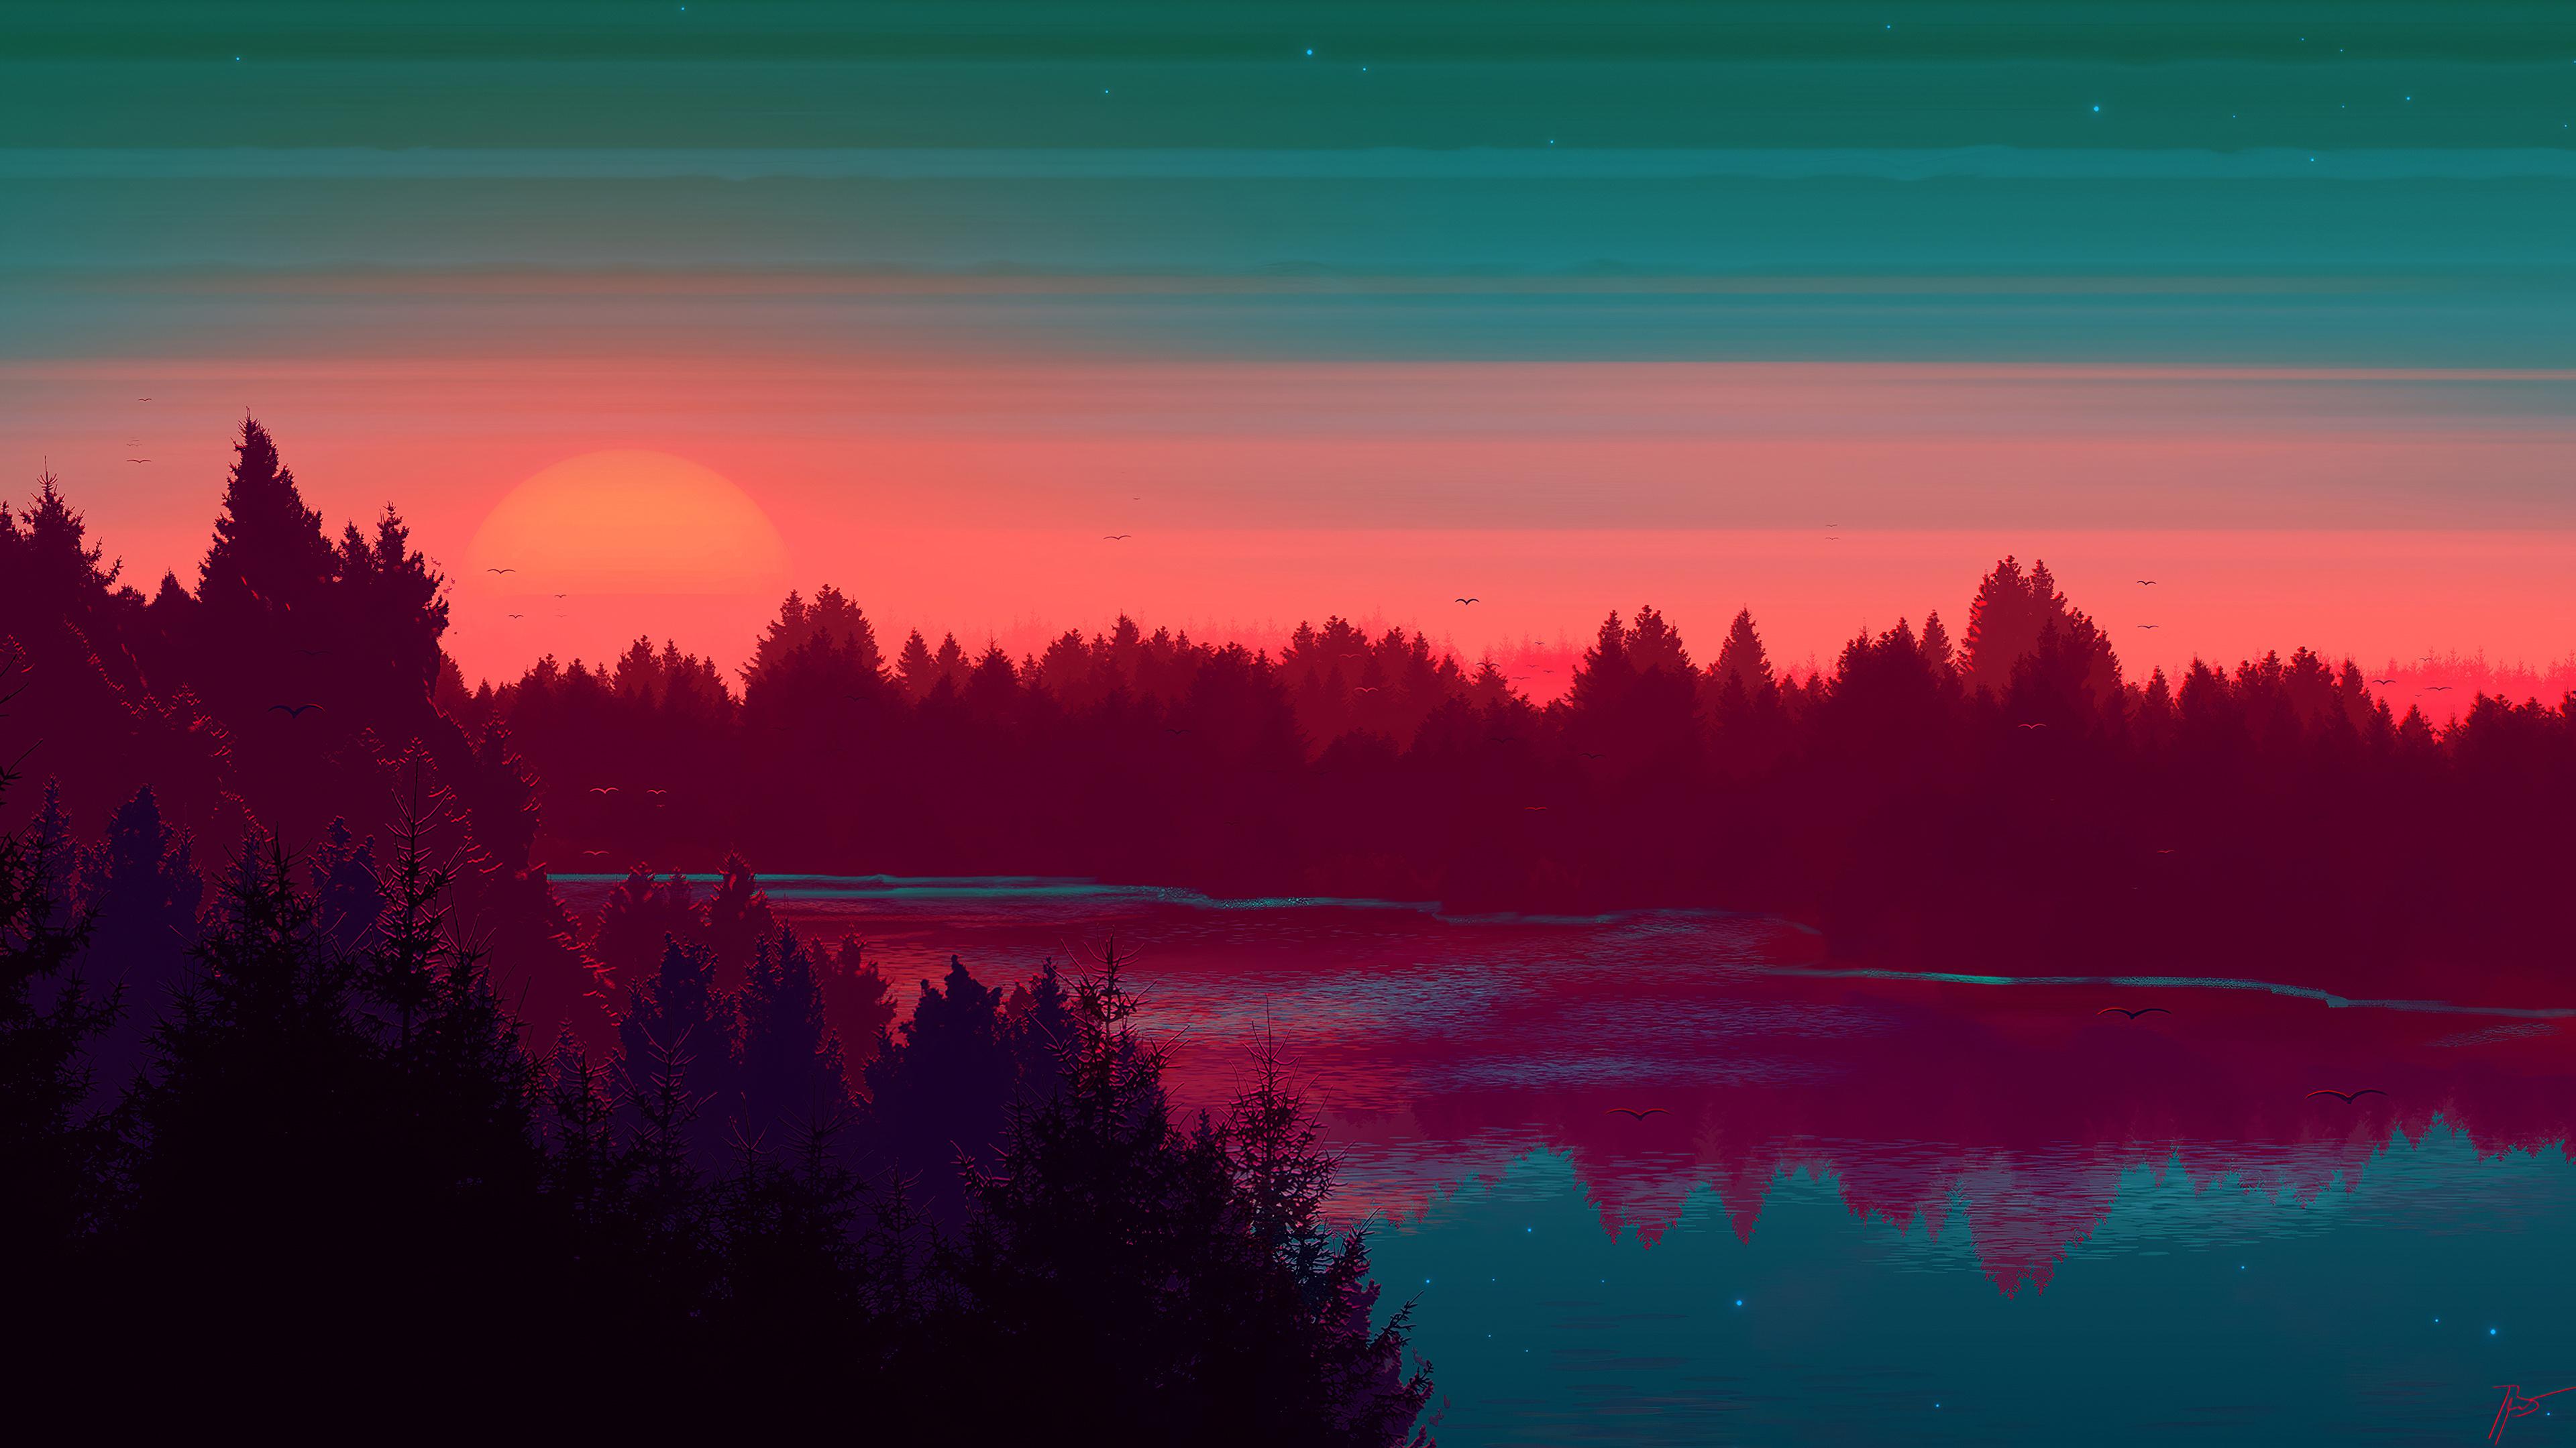 Sunset River Scenery Digital Art 4k Wallpaper